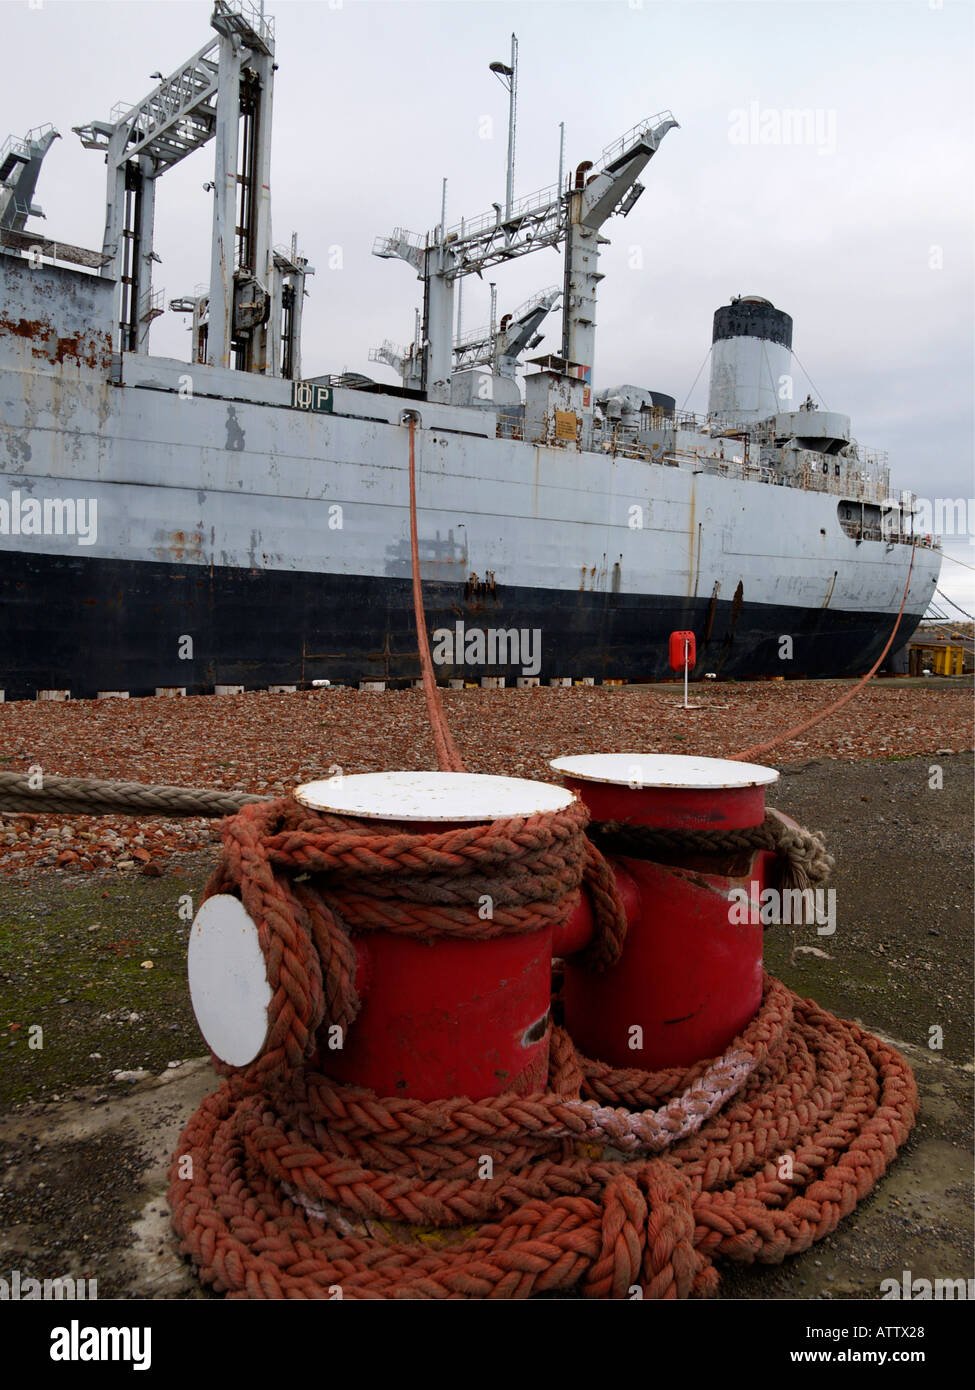 Un ex-us navy ship in attesa di demolizione presso la struttura TERRC a Hartlepool Co. Durham, Regno Unito Foto Stock